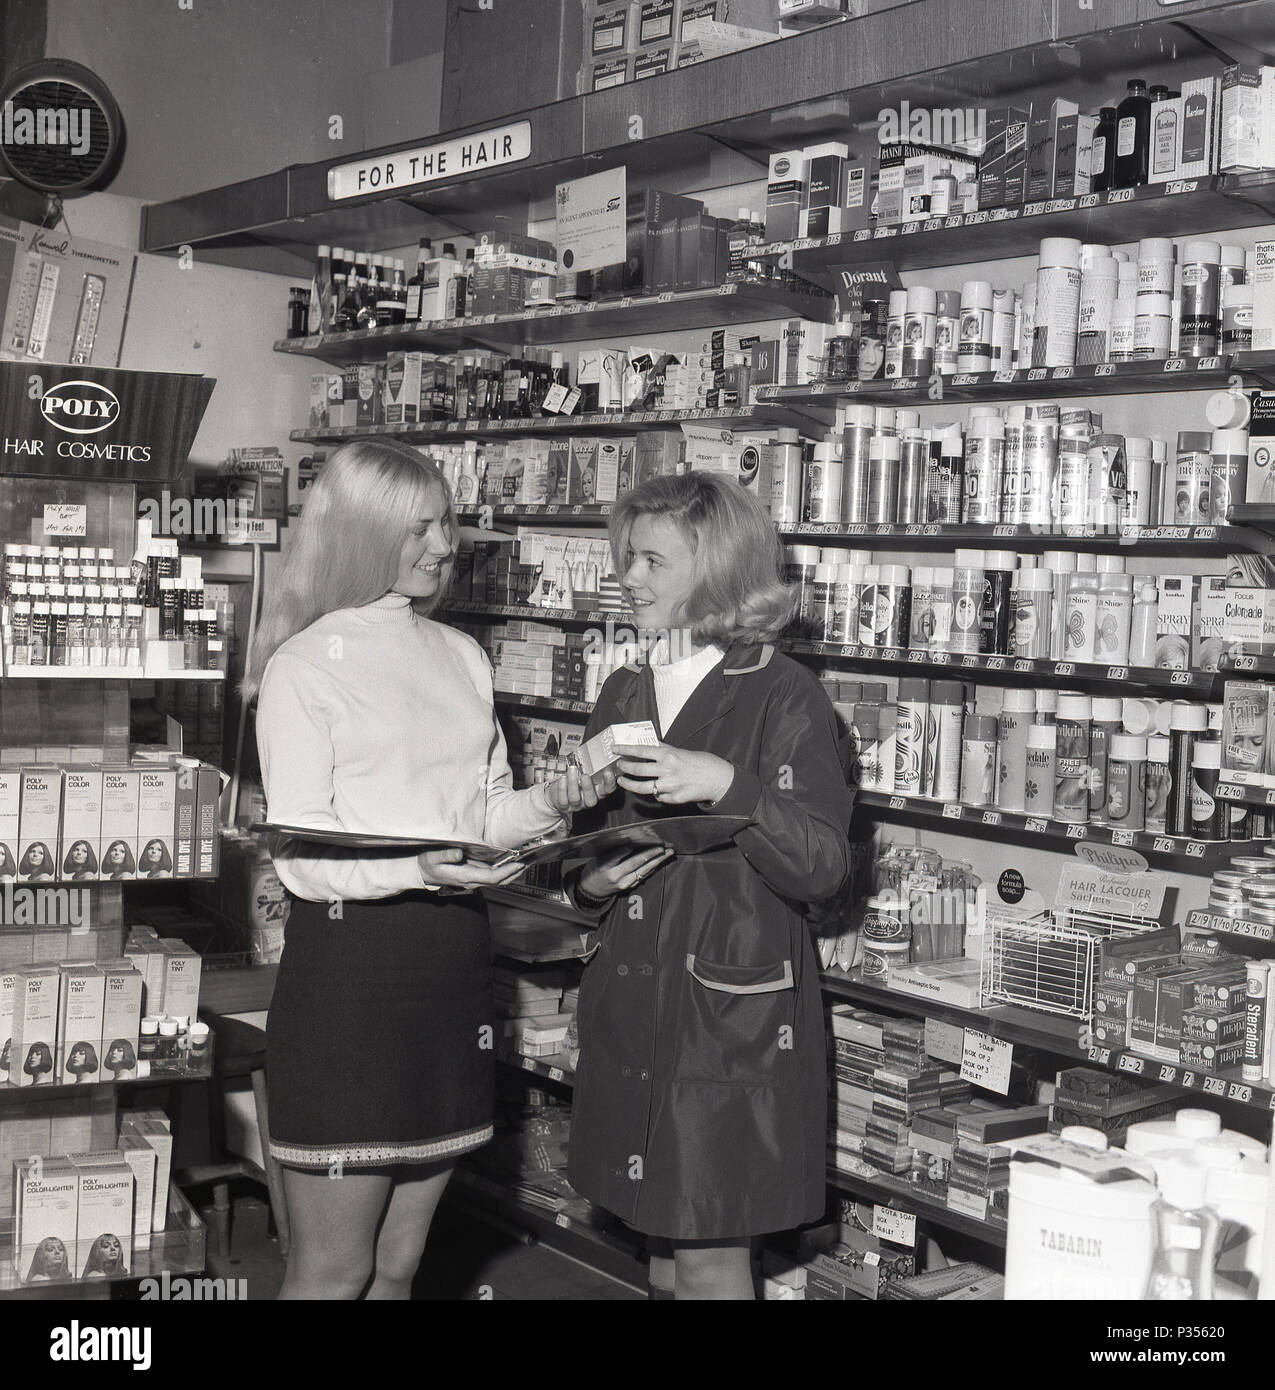 1970, deux jeunes femmes dans une pharmacie, une avec les cheveux longs et portait une jupe courte, montrant l'autre, dans un rainmac, un échantillon de la large gamme de produits cosmétiques et de cheveux disponibles, England, UK. Banque D'Images